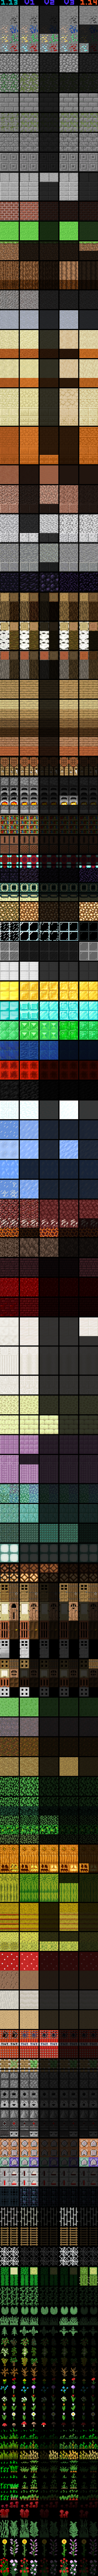 Minecraft 1 14 1 13 Texture Comparison